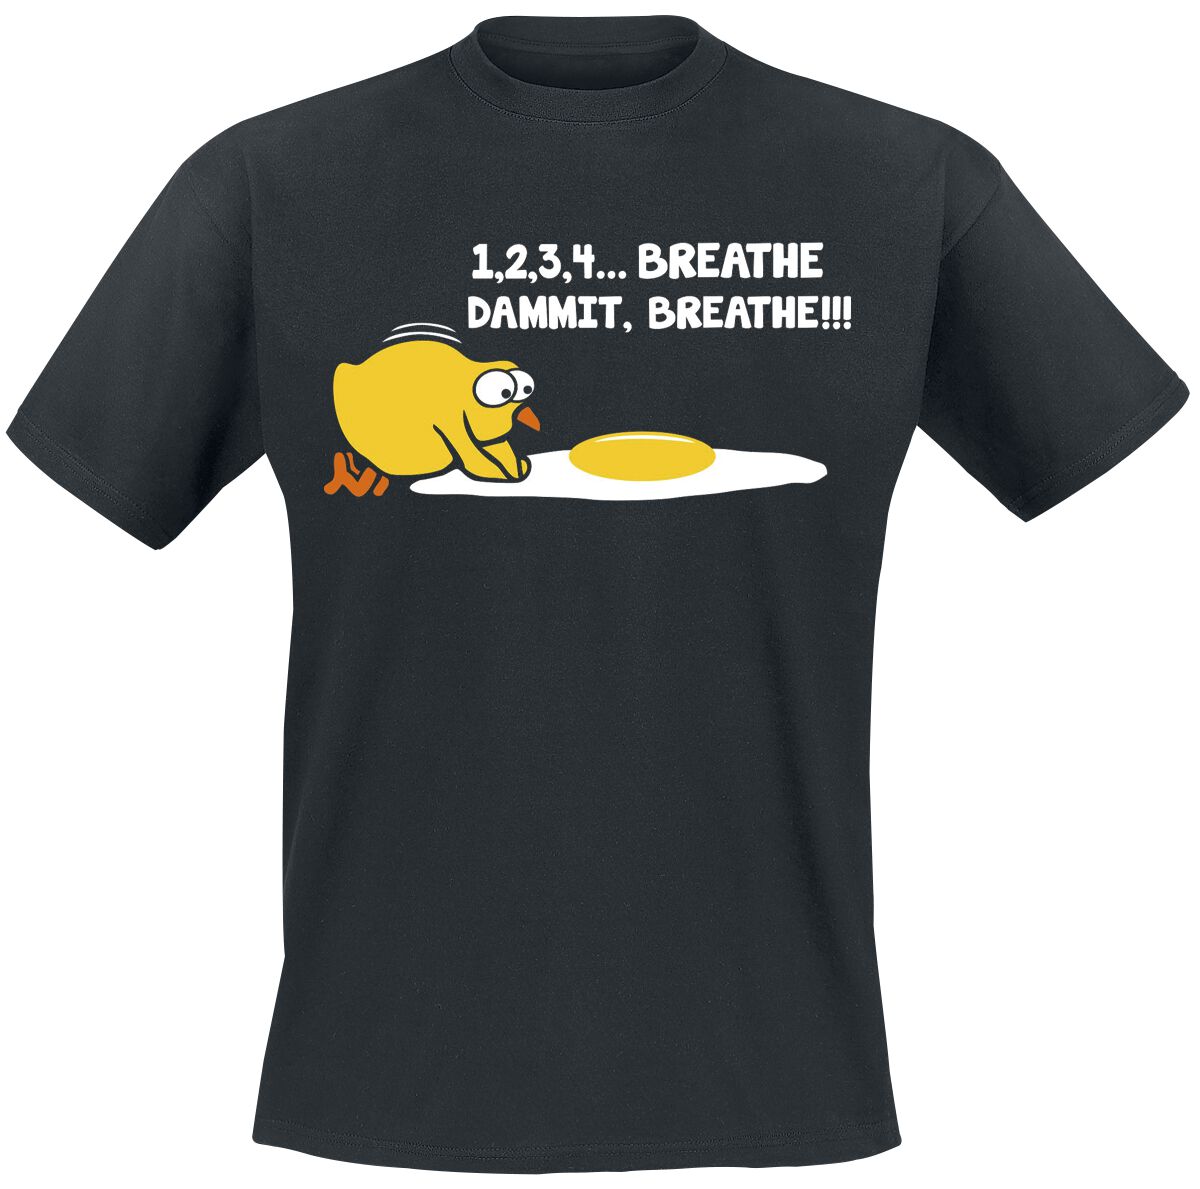 Sprüche T-Shirt - 1,2,3,4... Breathe, Dammit, Breathe!!! - S bis 4XL - für Männer - Größe S - schwarz